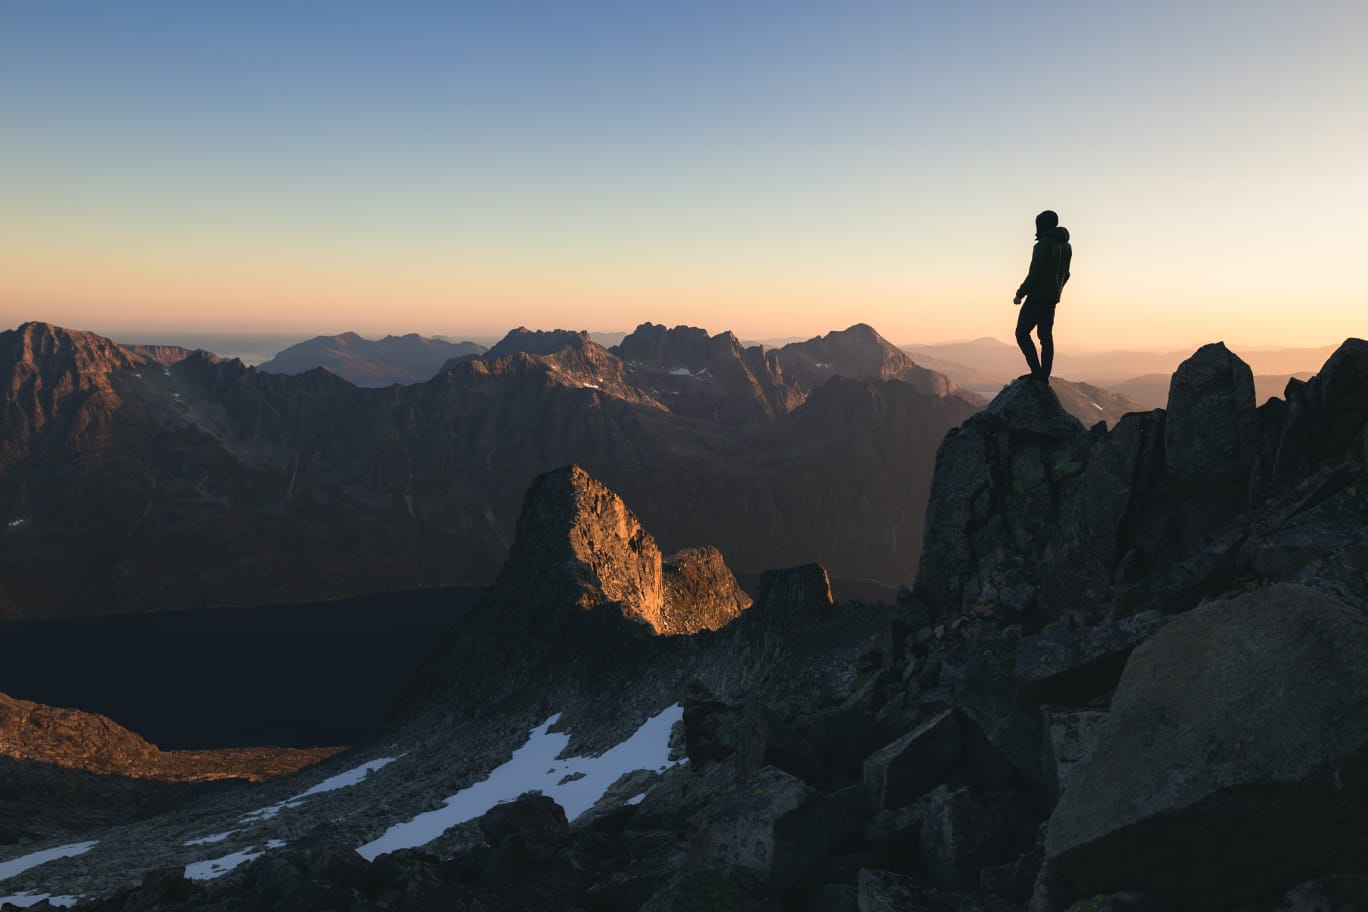 alpinista no topo de uma montanha, representando o topo das buscas no Google